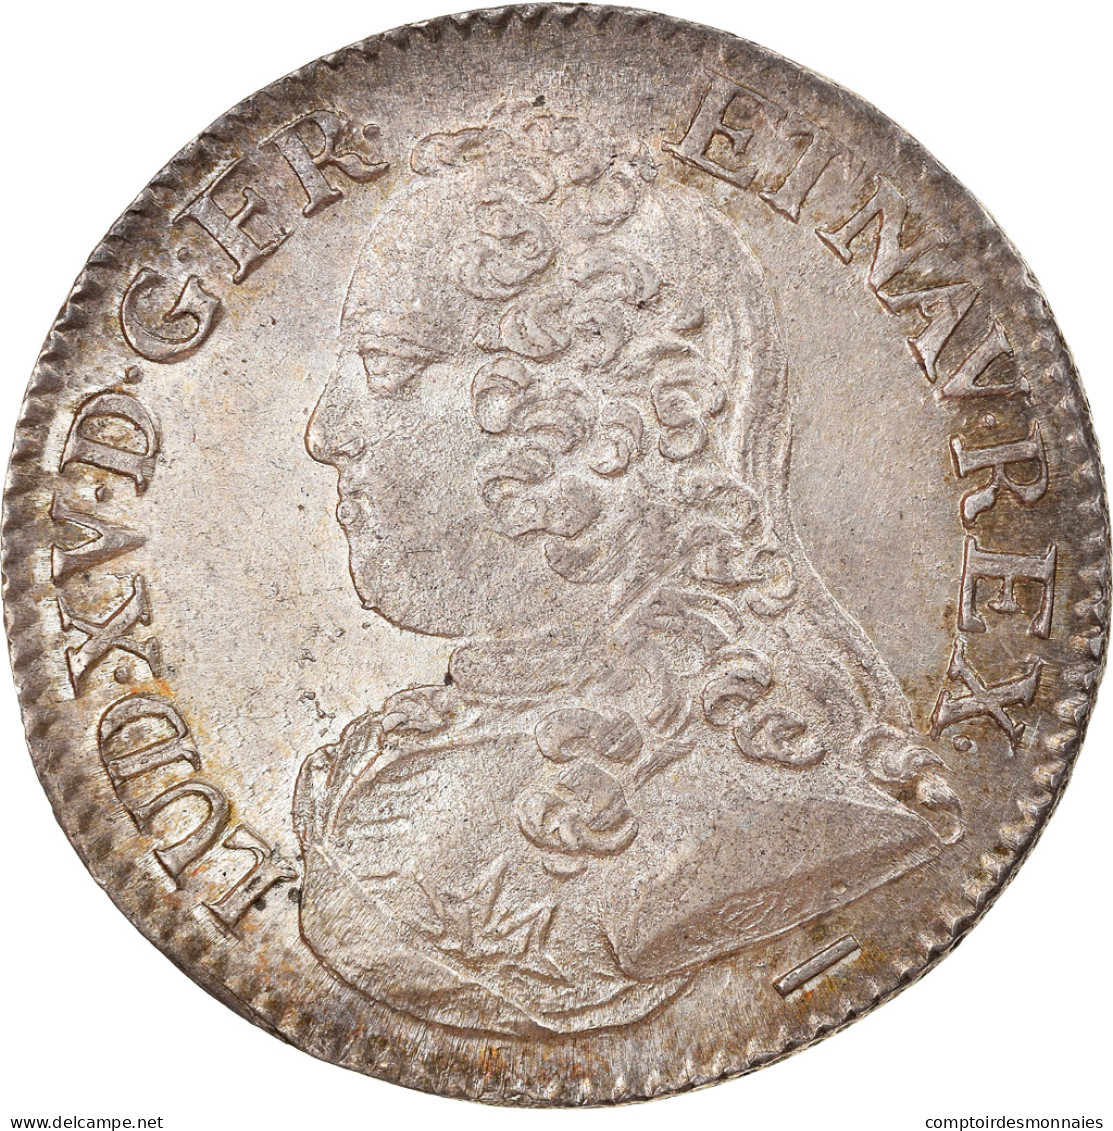 Monnaie, France, Louis XV, 1/5 Écu Aux Branches D'olivier, 24 Sols, 1/5 ECU - 1715-1774 Louis  XV The Well-Beloved